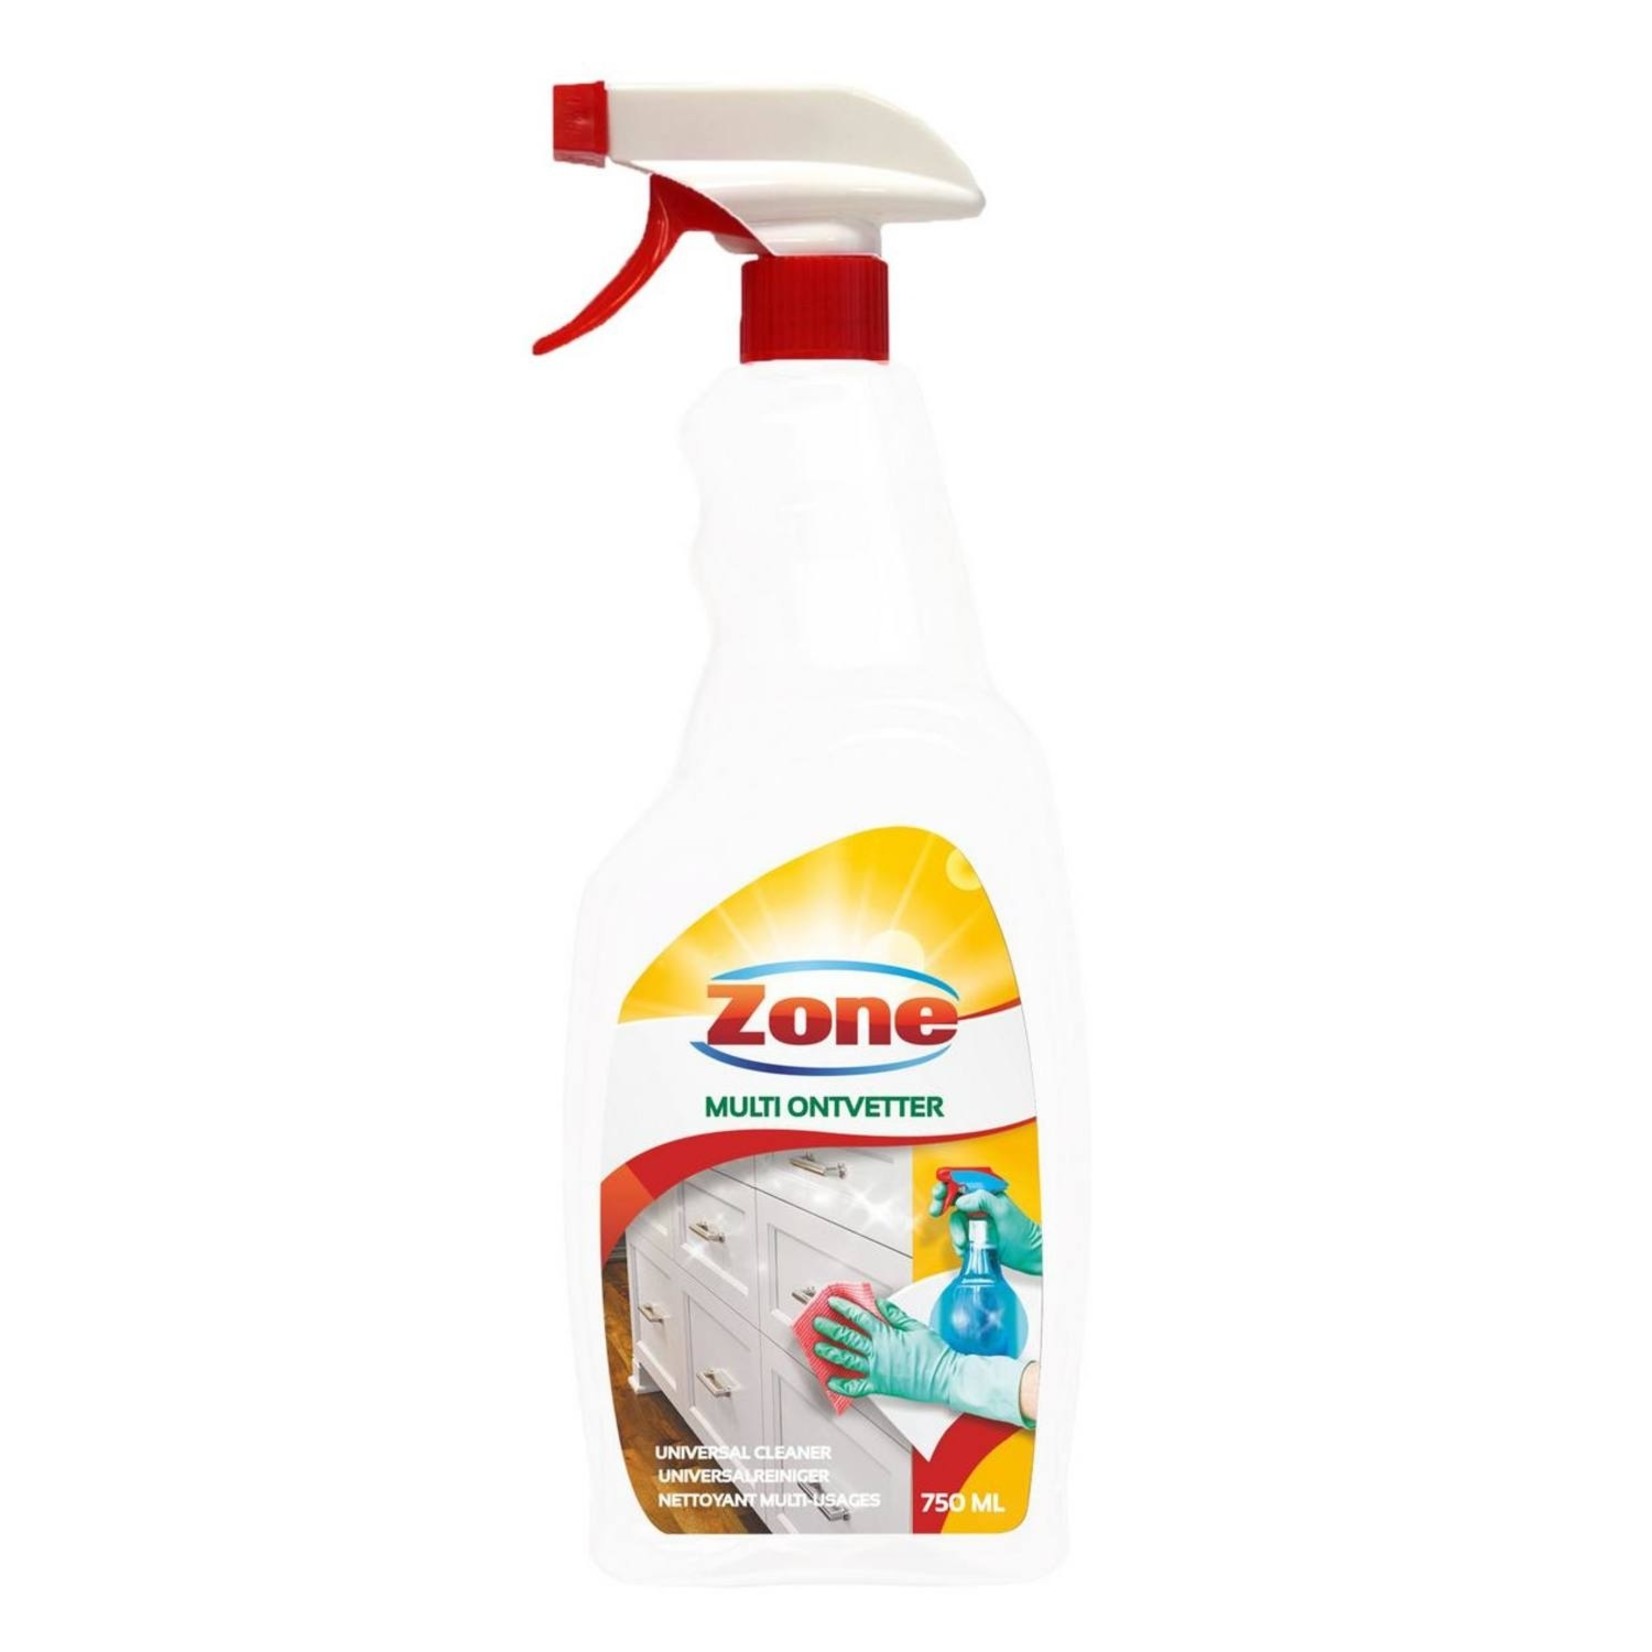 Zone Multireiniger / multiontvetter spray 750ml